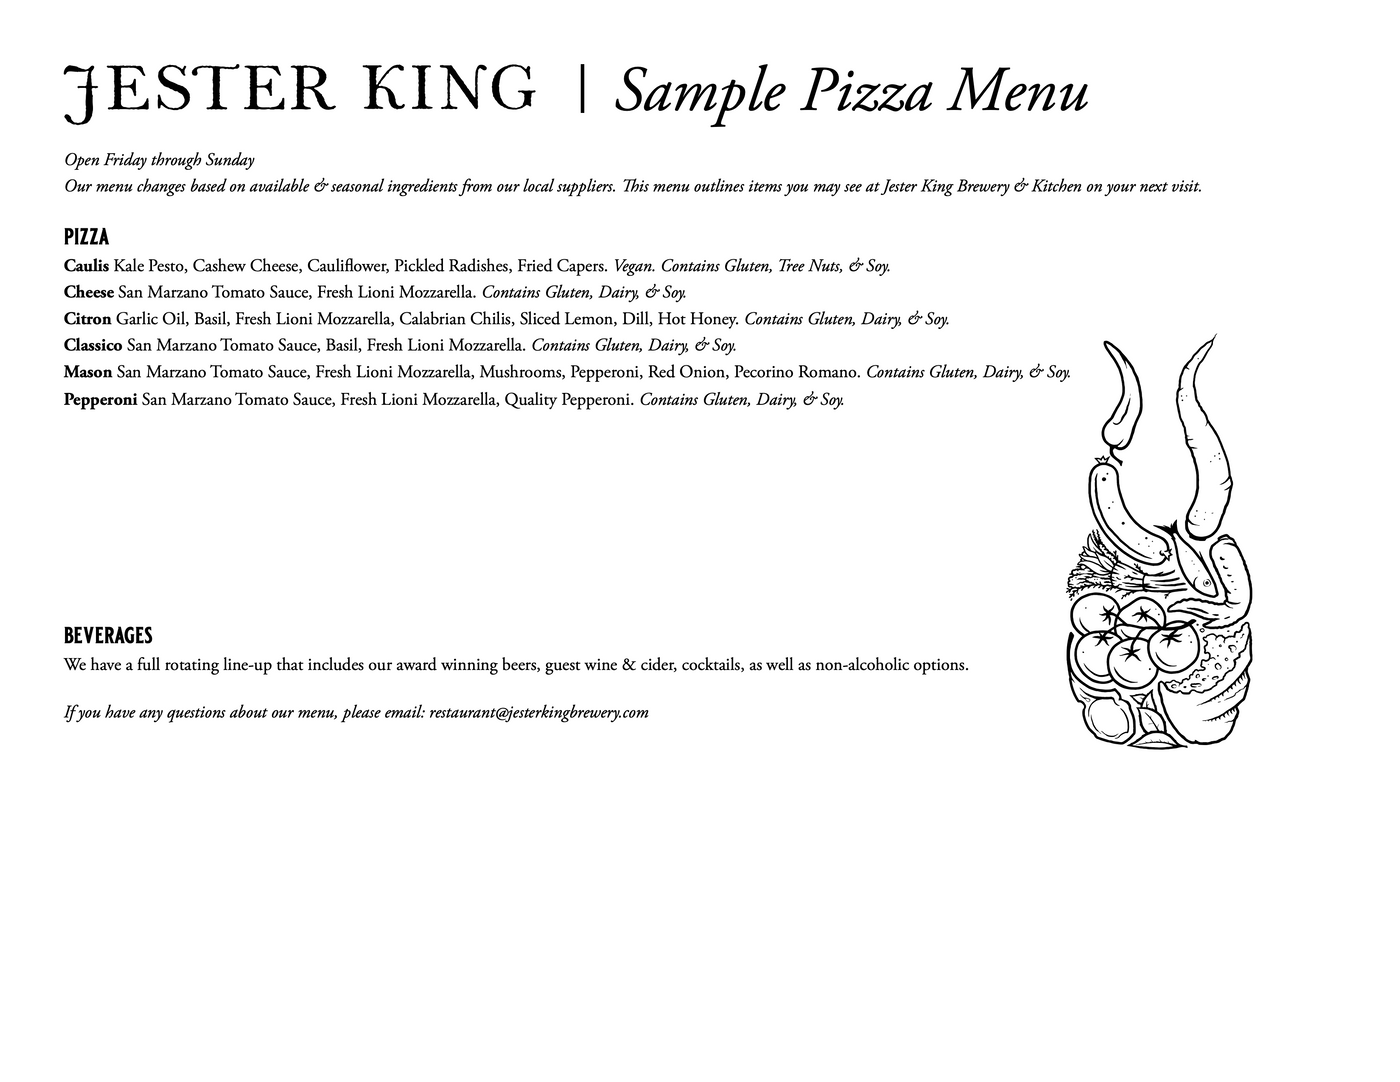 Sample Pizza Menus_10_2022 (4)_03.png